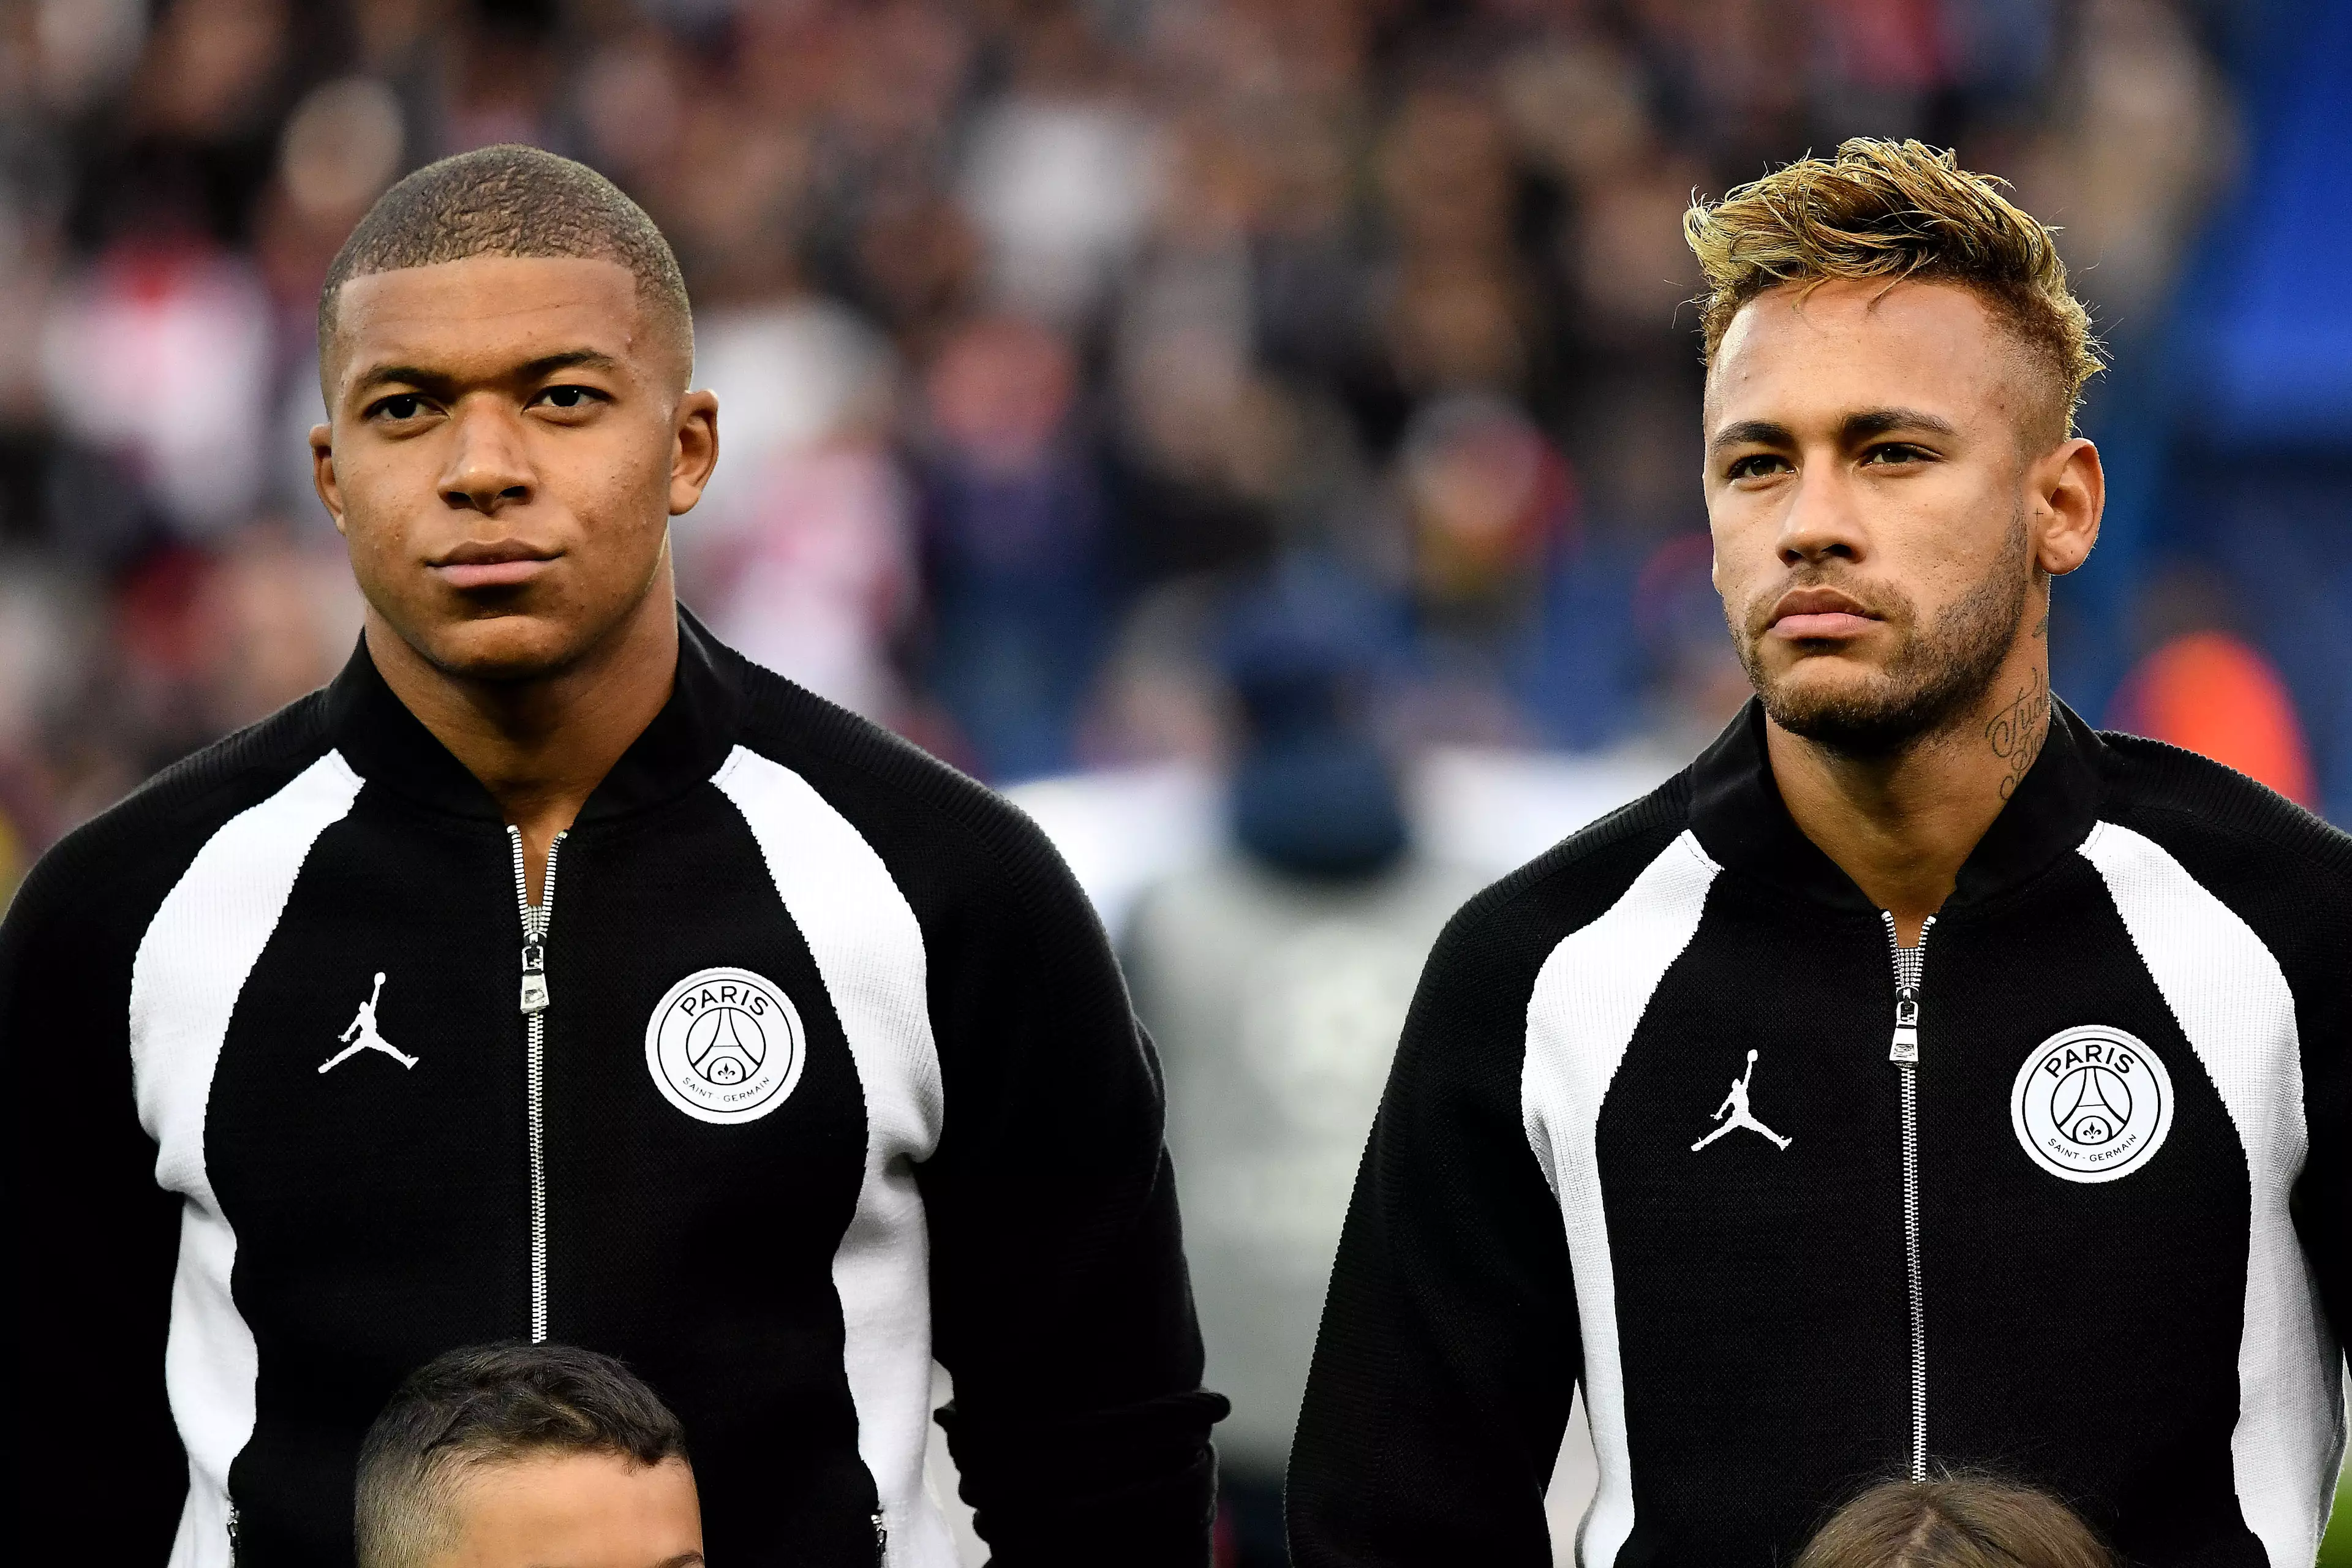 Is Mbappe overshadowing Neymar in Paris? Image: PA Images